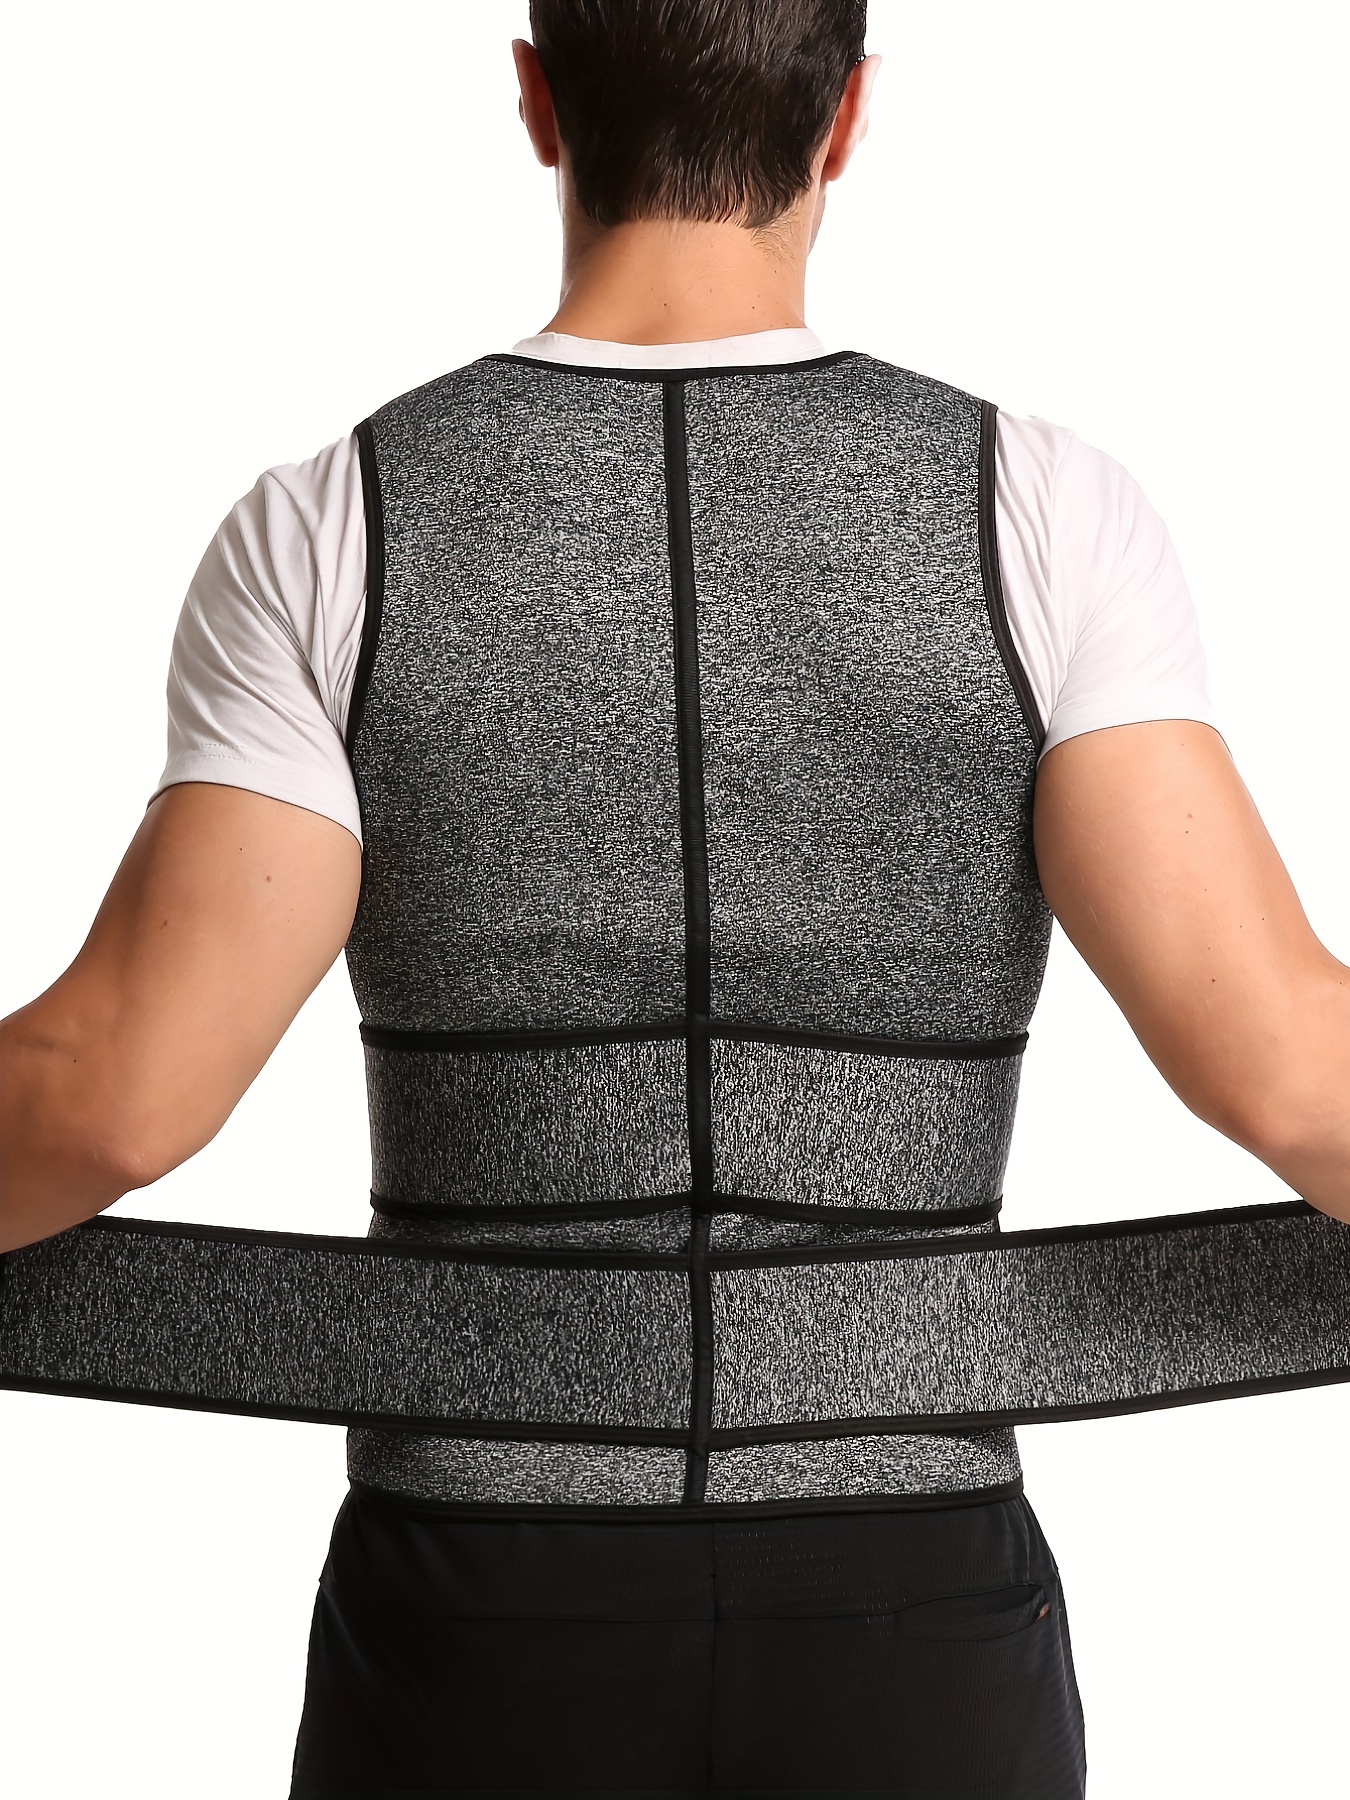 HOPLYNN Neoprene Sweat Waist Trainer Corset Trimmer Belt for Women Weight  Loss, Waist Cincher Shaper Slimmer Gray Small : : Clothing &  Accessories